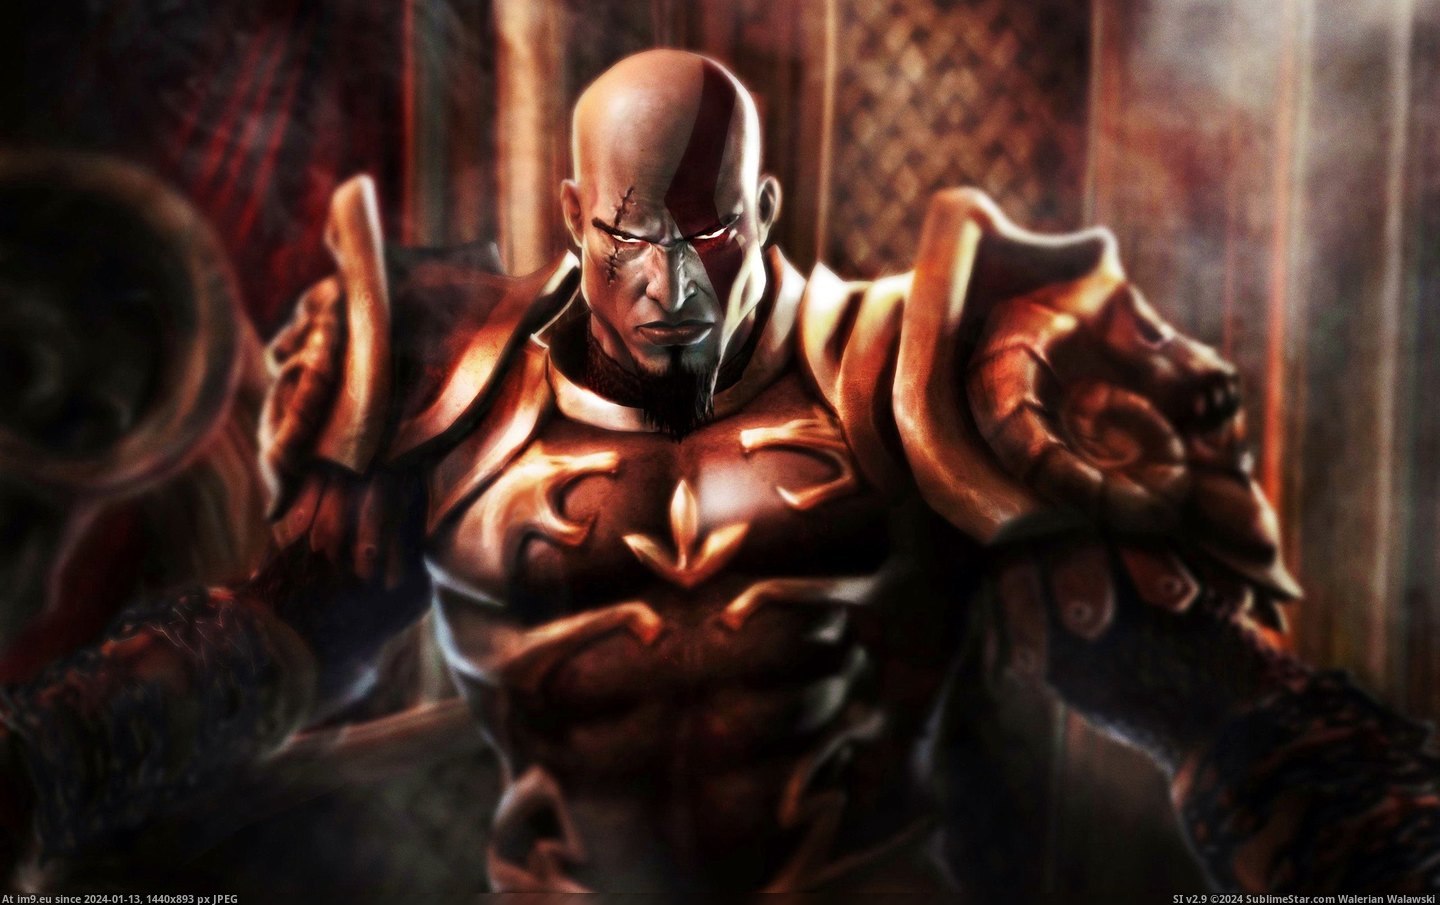 #Wallpaper #Wide #Kratos #War #God Kratos God Of War Wide HD Wallpaper Pic. (Obraz z album Unique HD Wallpapers))